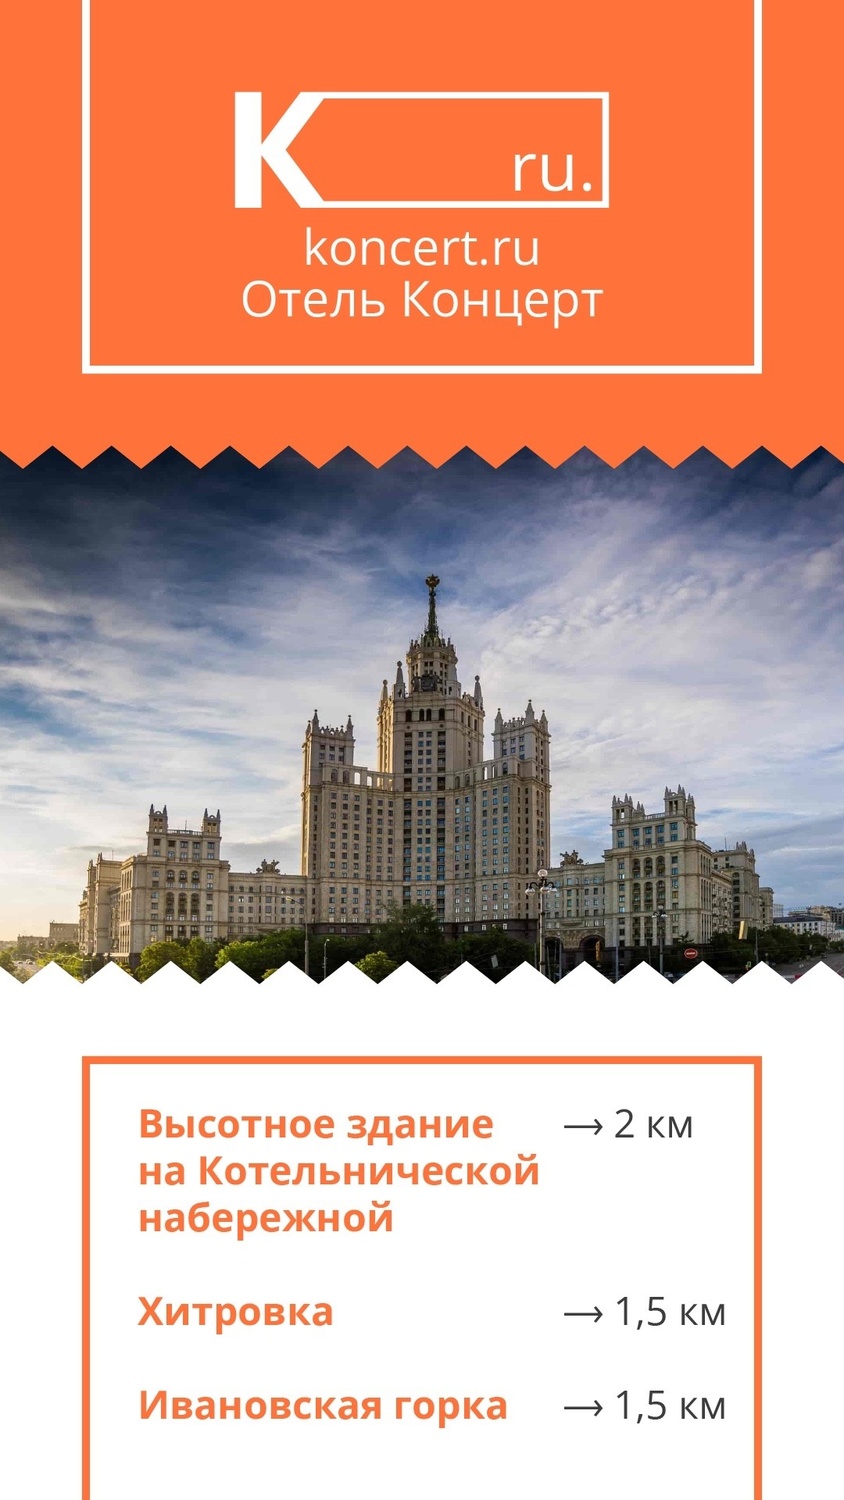 Исторический центр Москвы всего 1,5 км от гостиницы "Концерт на Таганской" или 15-20 минут пешком.  